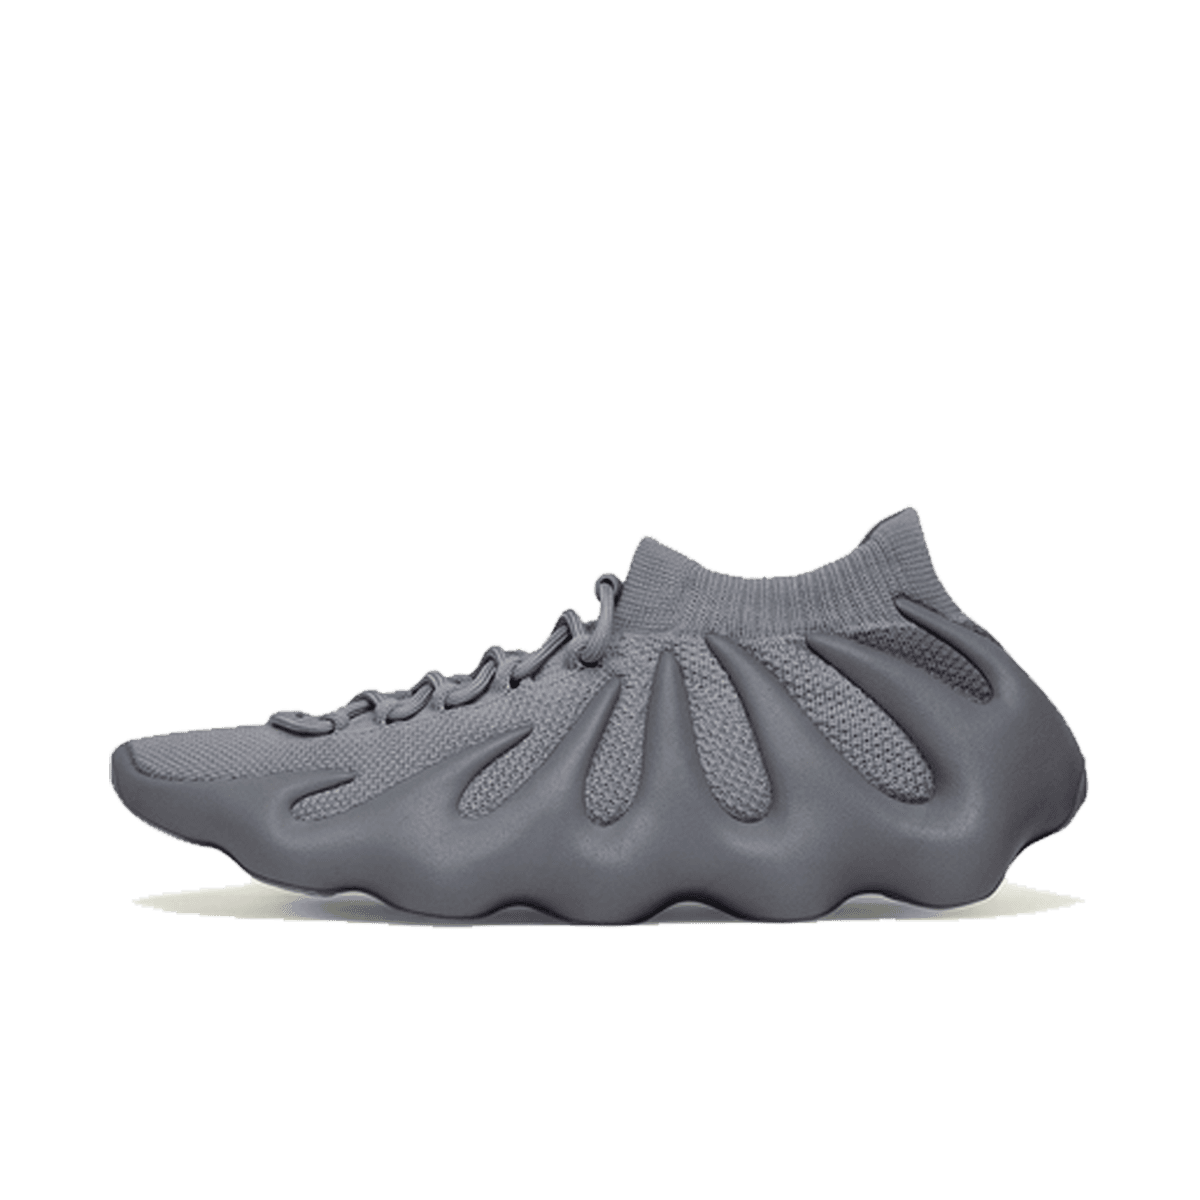 adidas Yeezy 450 'Stone Grey'